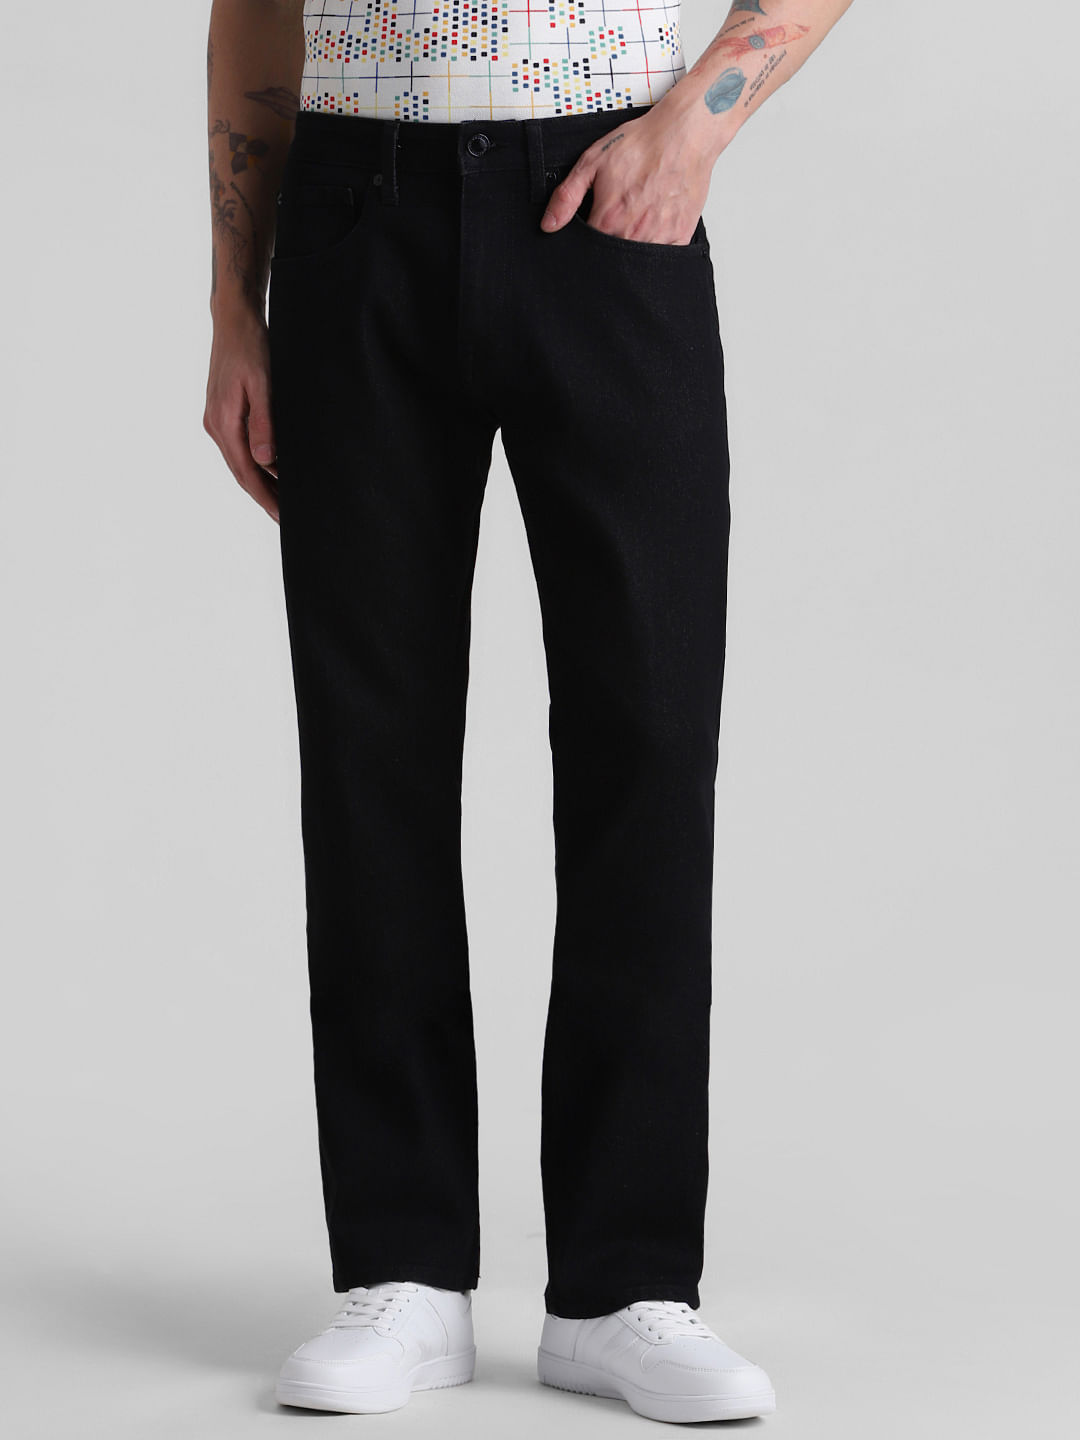 Buy Black Formal Trouser For Men Online @ Best Prices in India | Uniform  Bucket | UNIFORM BUCKET